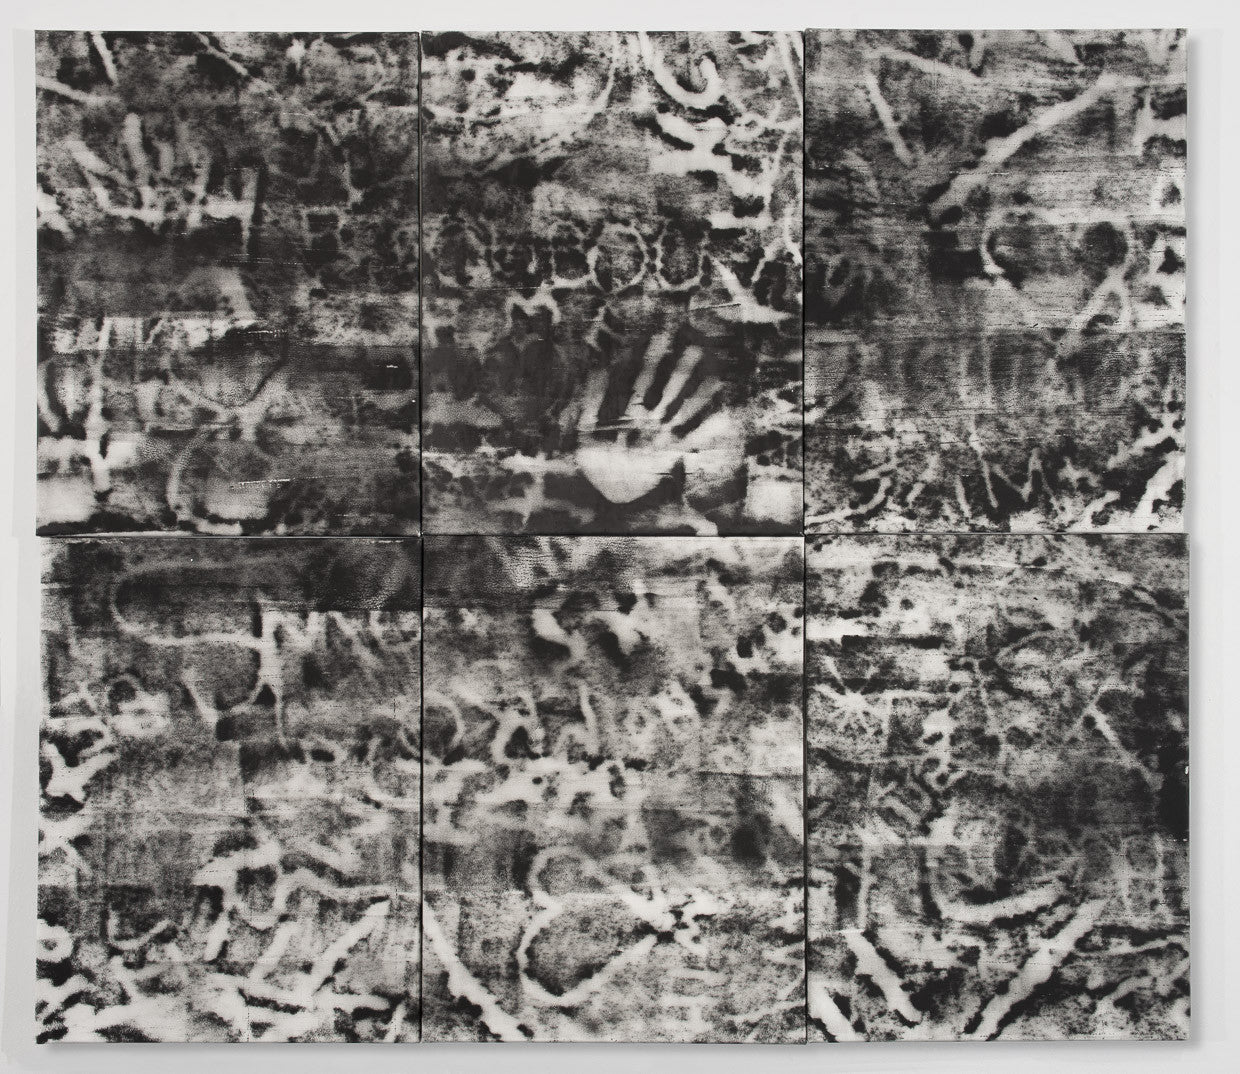 Brigitte Engler, "6 Panels With Handprint"